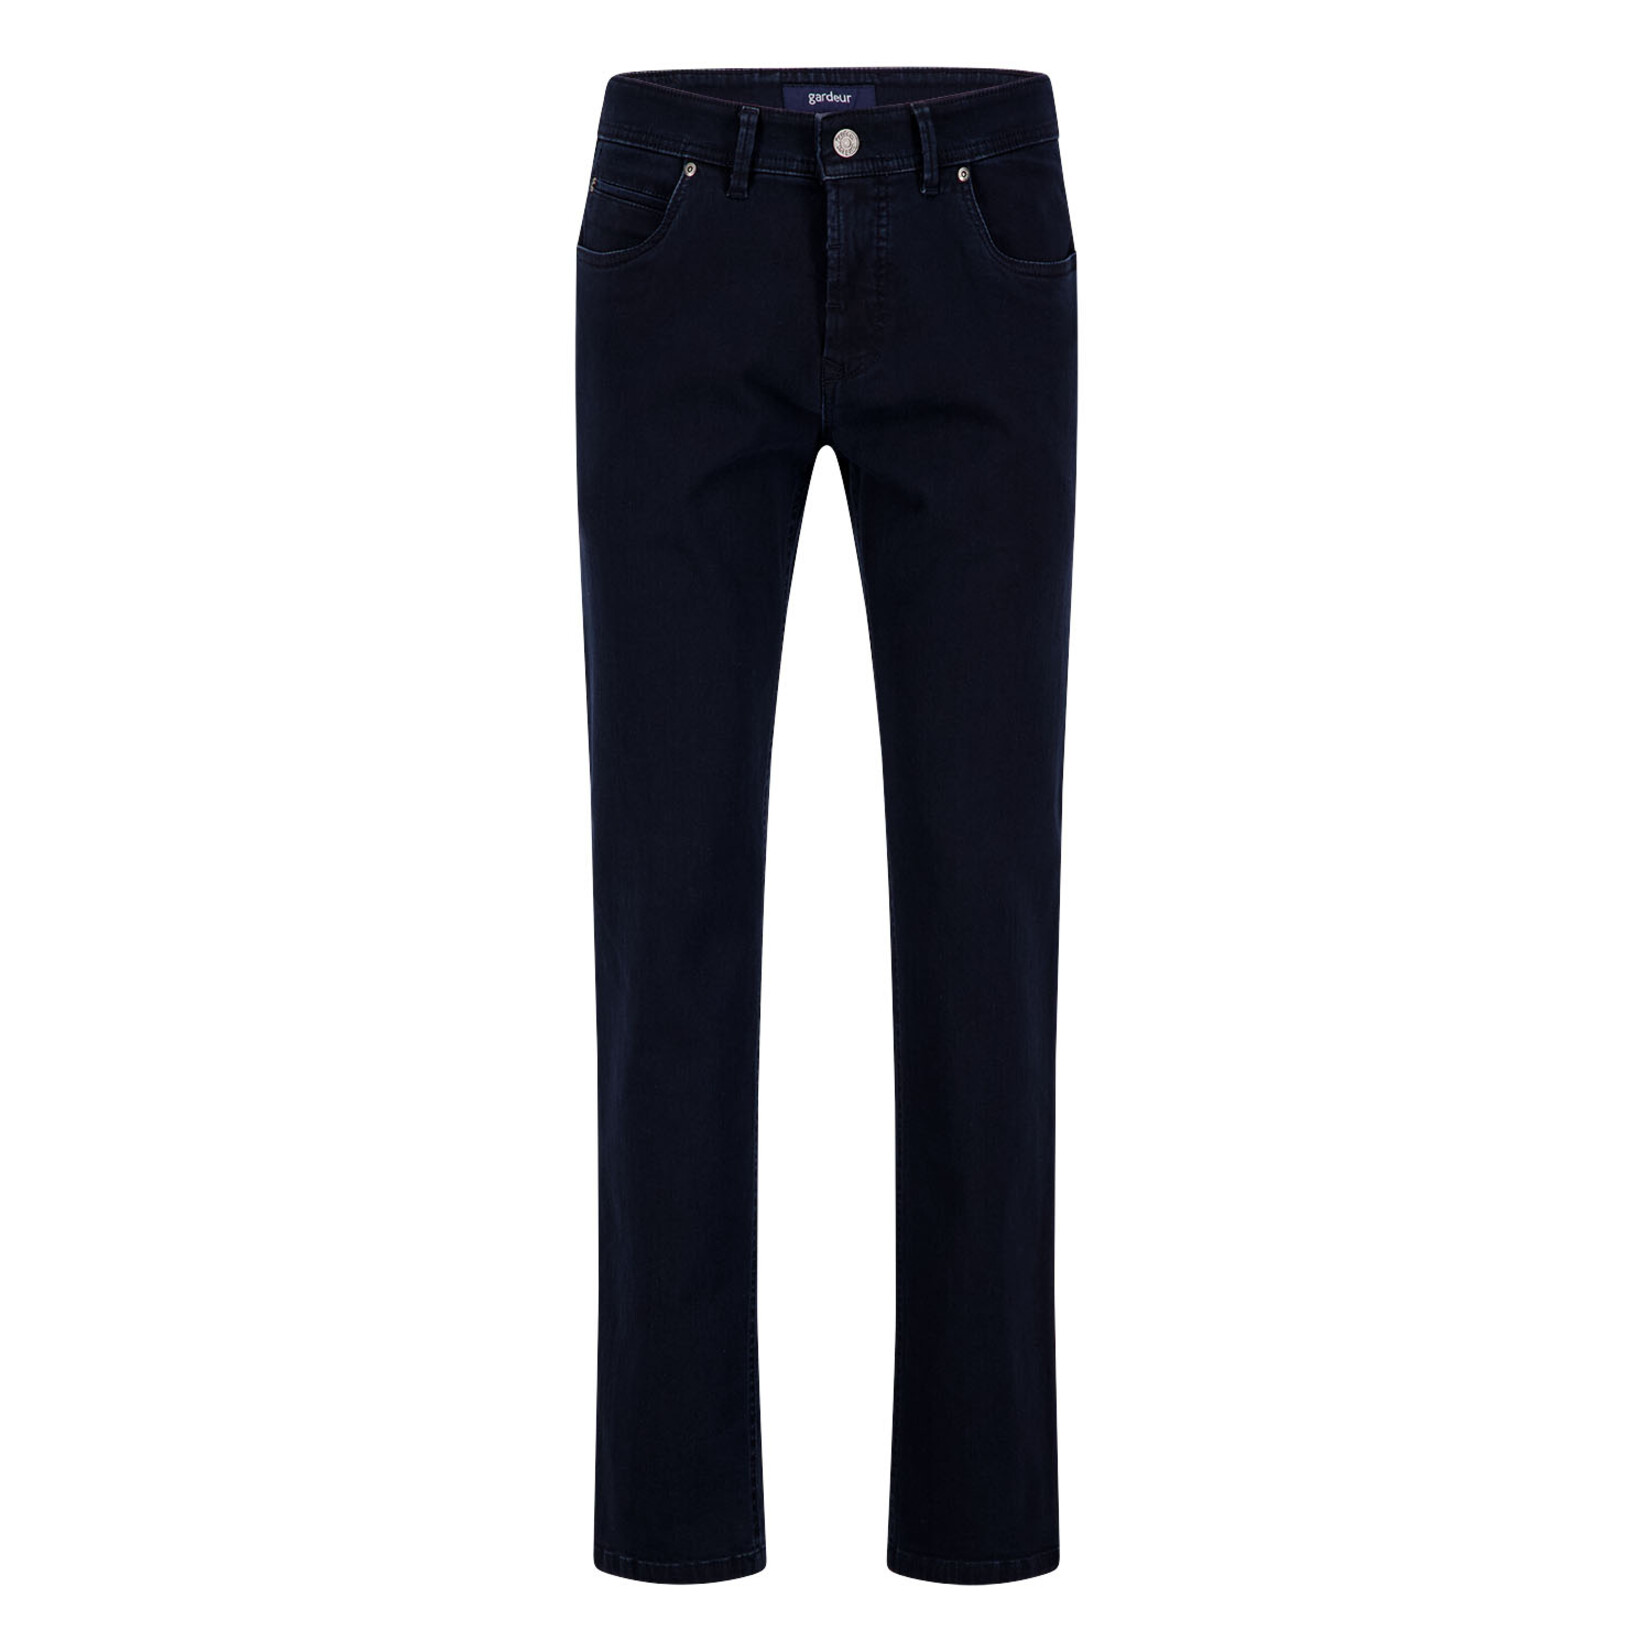 Gardeur Bradley modern fit jeans marine 470881-8269